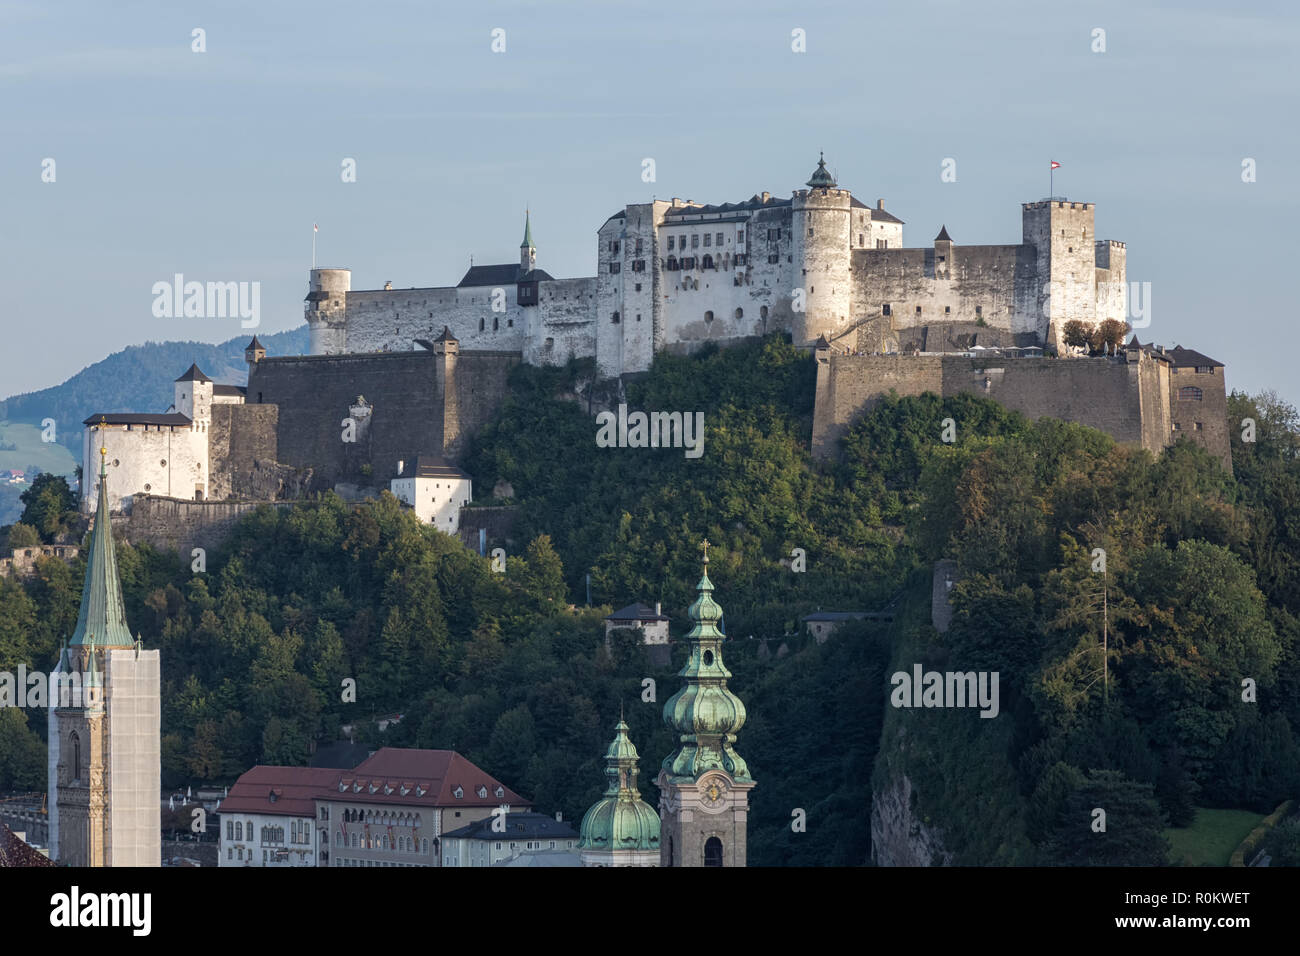 Ville de Salzbourg, en Autriche. Vue depuis le quartier historique de Mönchsberg et la forteresse de Hohensalzburg. Blick auf die Festung Hohensalzburg, 2018 Banque D'Images